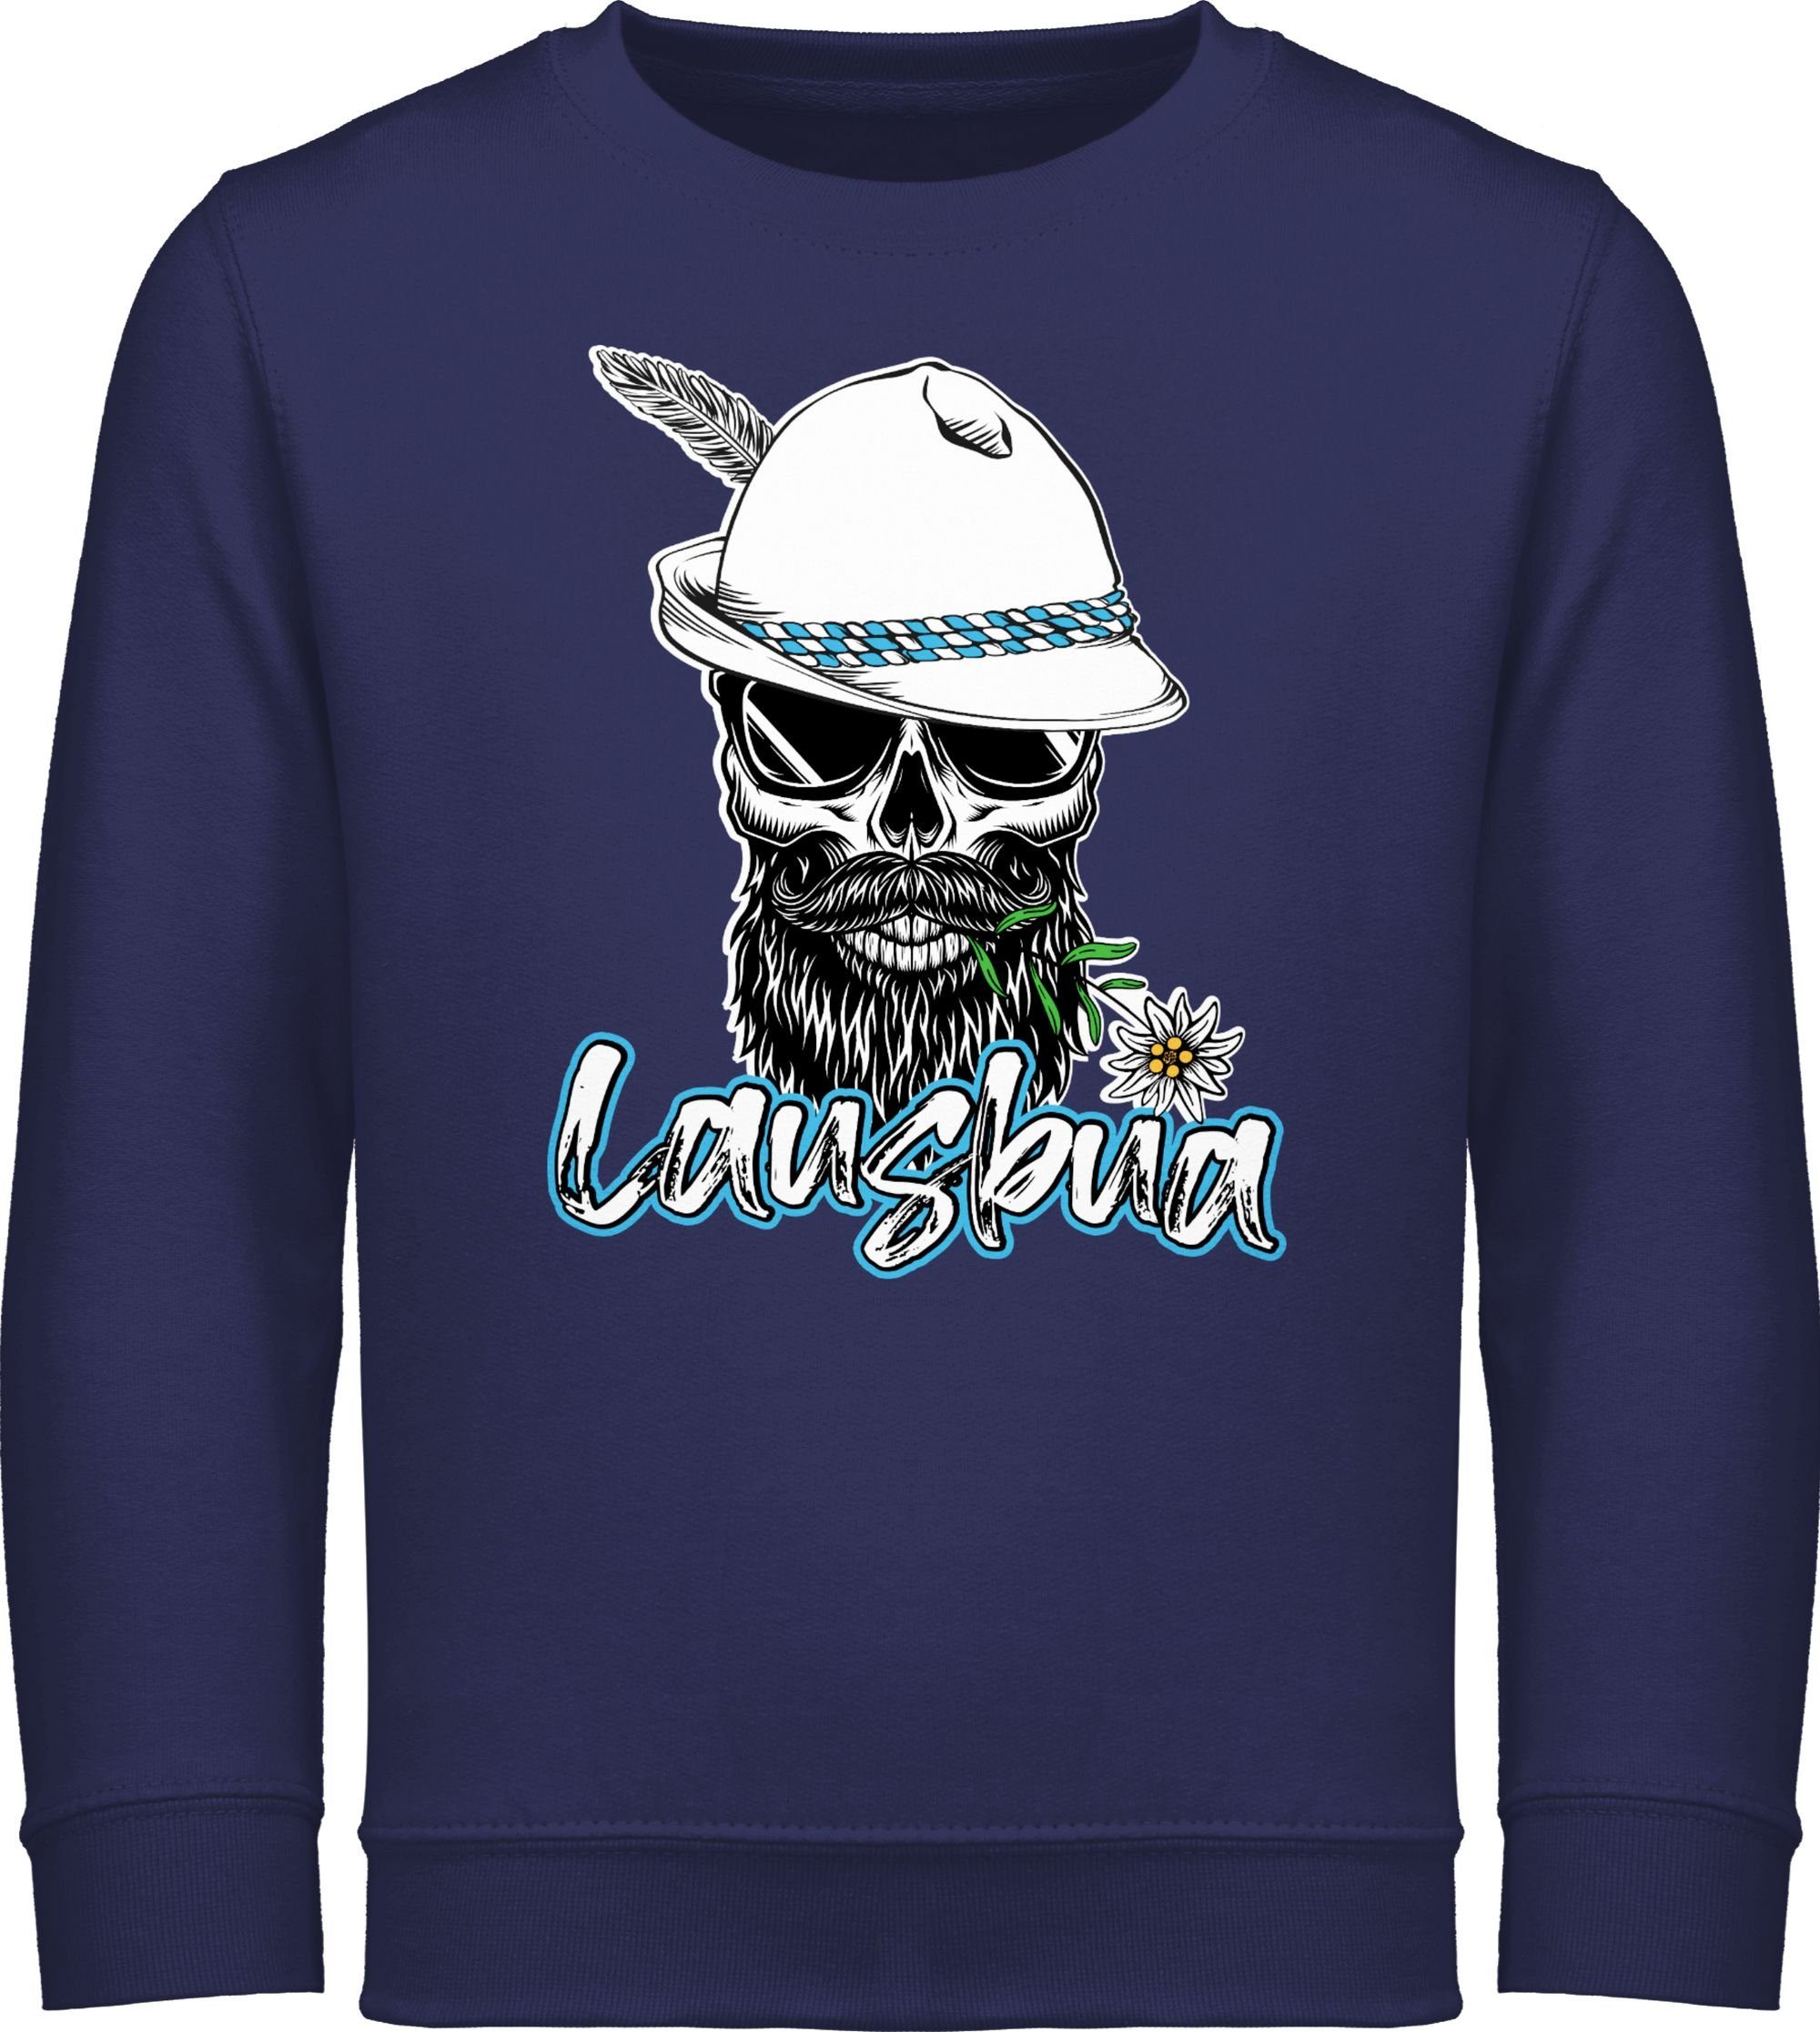 Shirtracer Sweatshirt Lausbua Totenkopf Skull Bayrisch Lausbub Schlingel Mode für Oktoberfest Kinder Outfit 1 Navy Blau